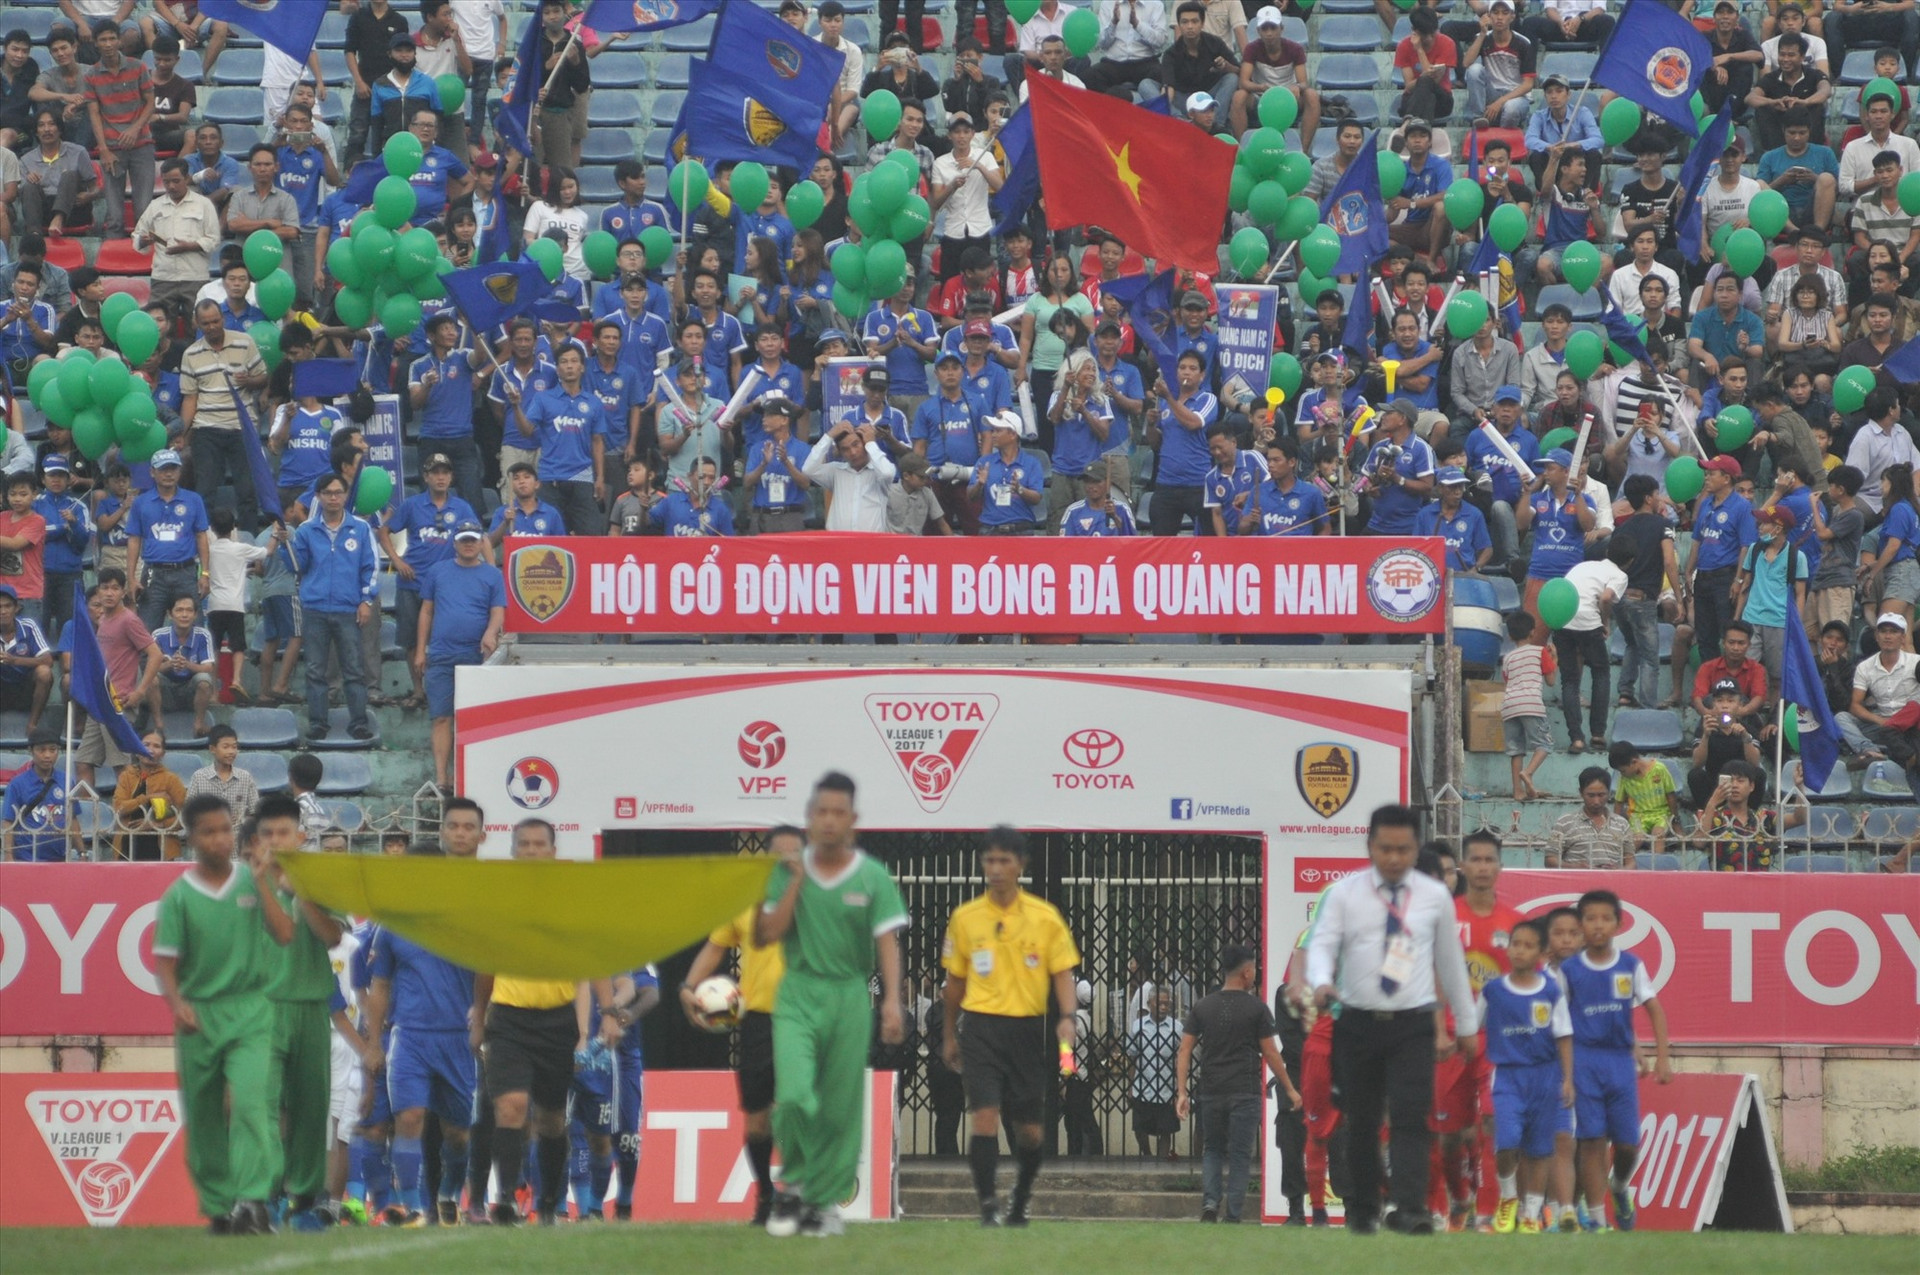 Hội CĐV bóng đá Quảng Nam nhiều năm trước đây luôn để lại ấn tượng với cách cổ động nhiệt tình. Ảnh: T.VY